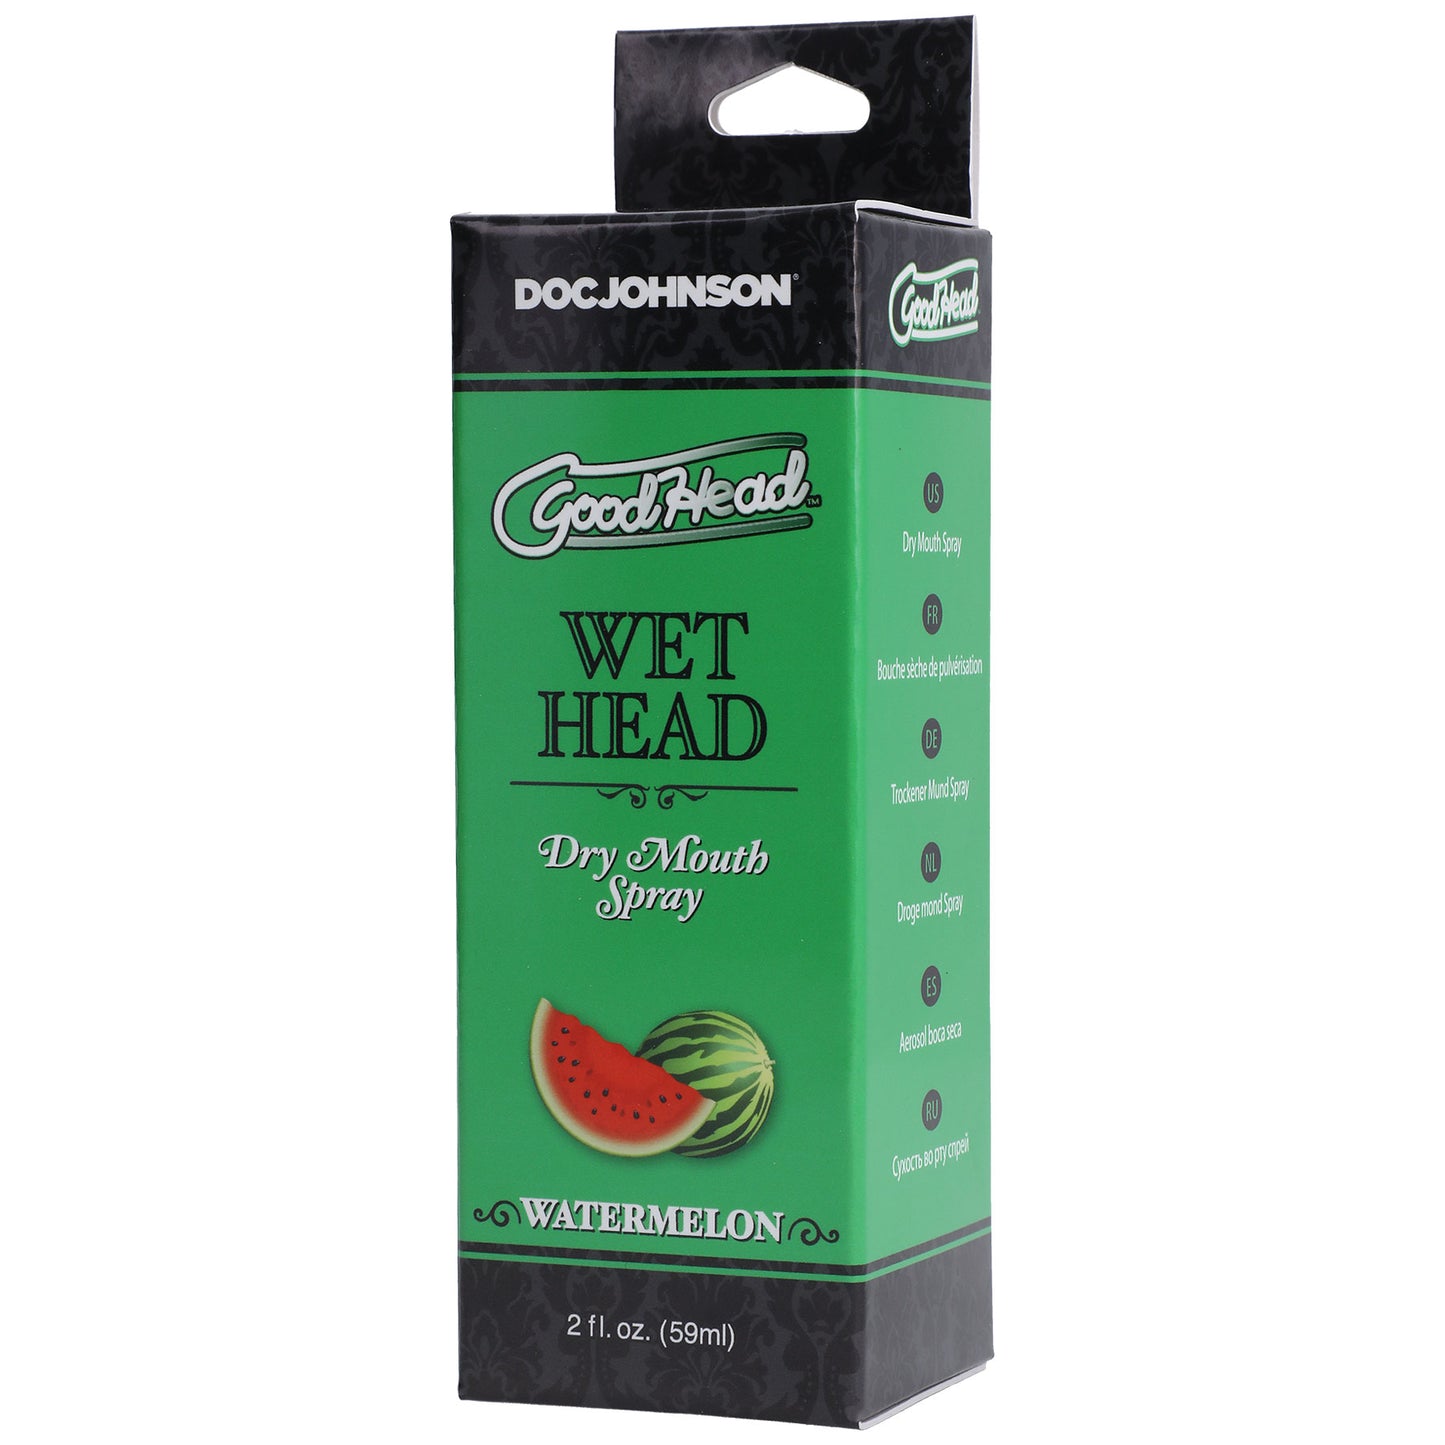 Goodhead - Wet Head - Dry Mouth Spray - Watermelon - 2 Fl. Oz.